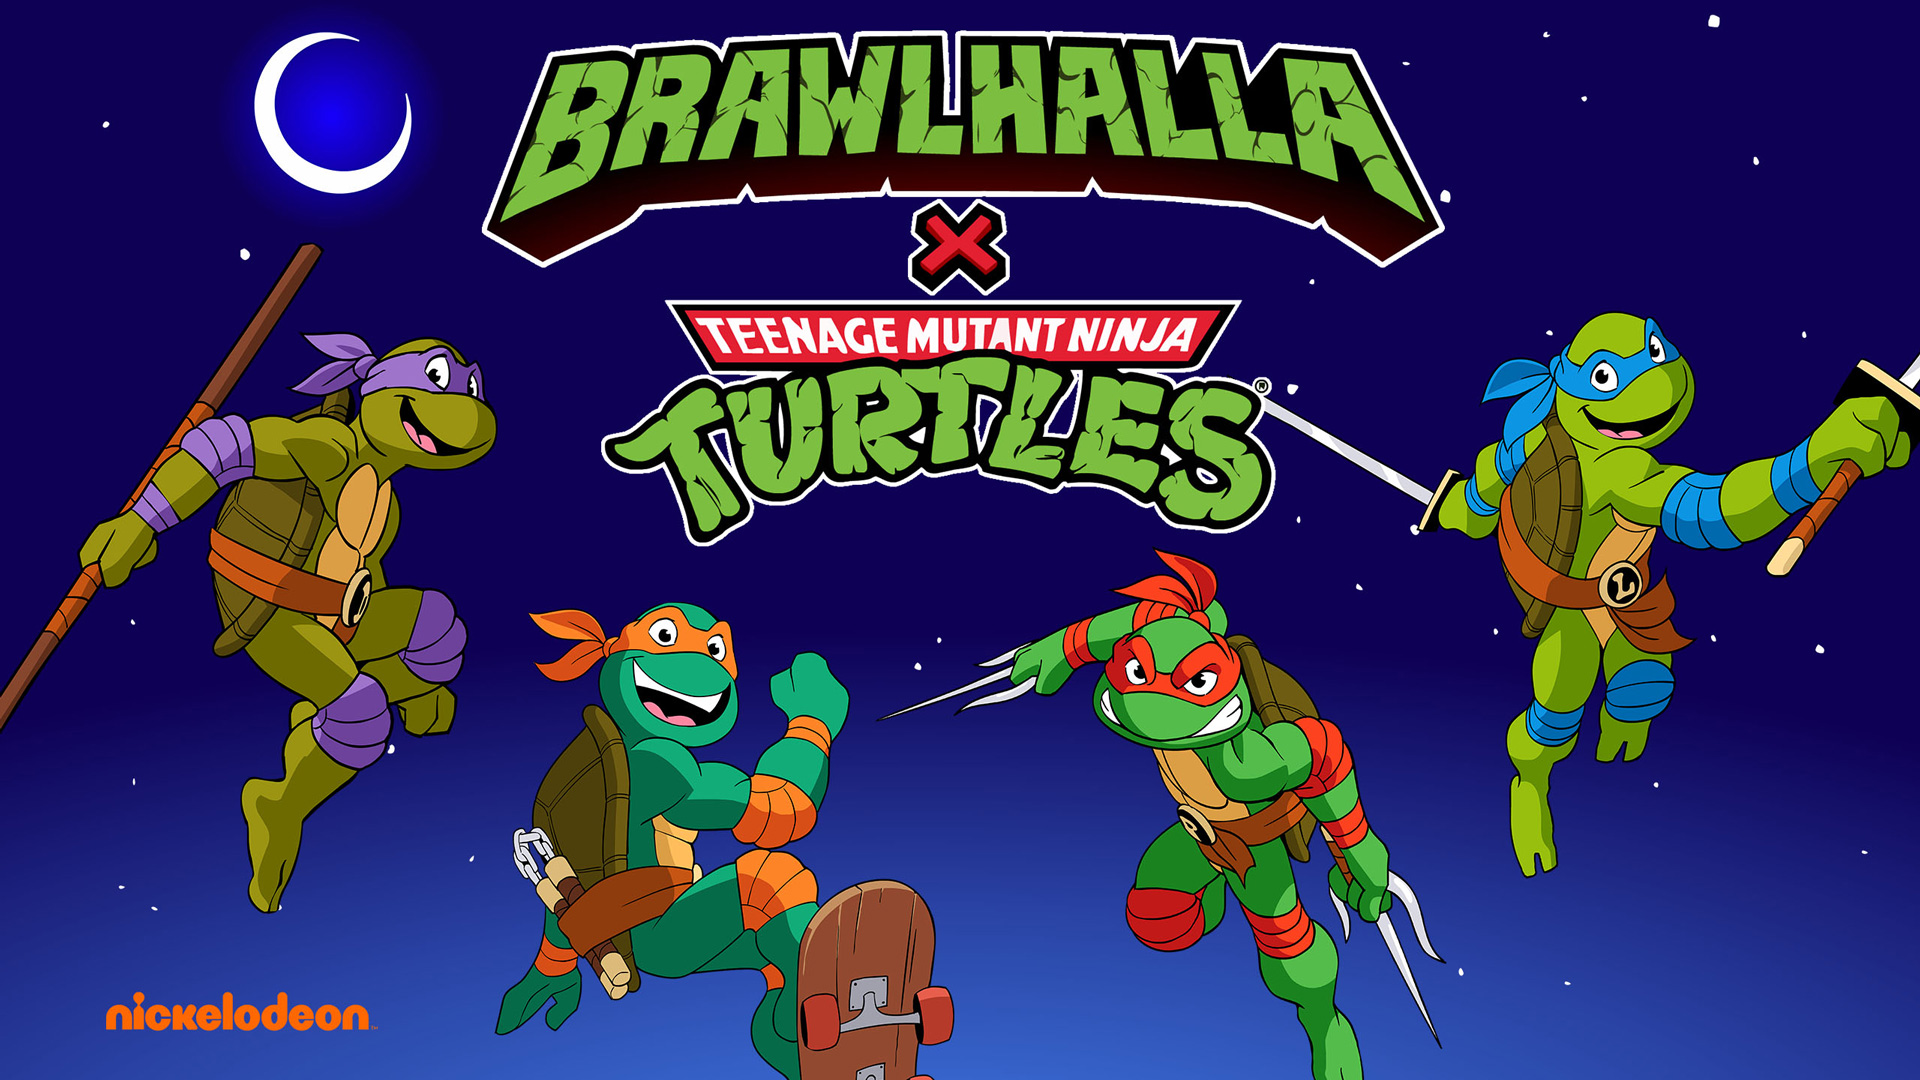 Em um crossover épico as Tartarugas Ninja da Nickelodeon chegam a Brawlhalla